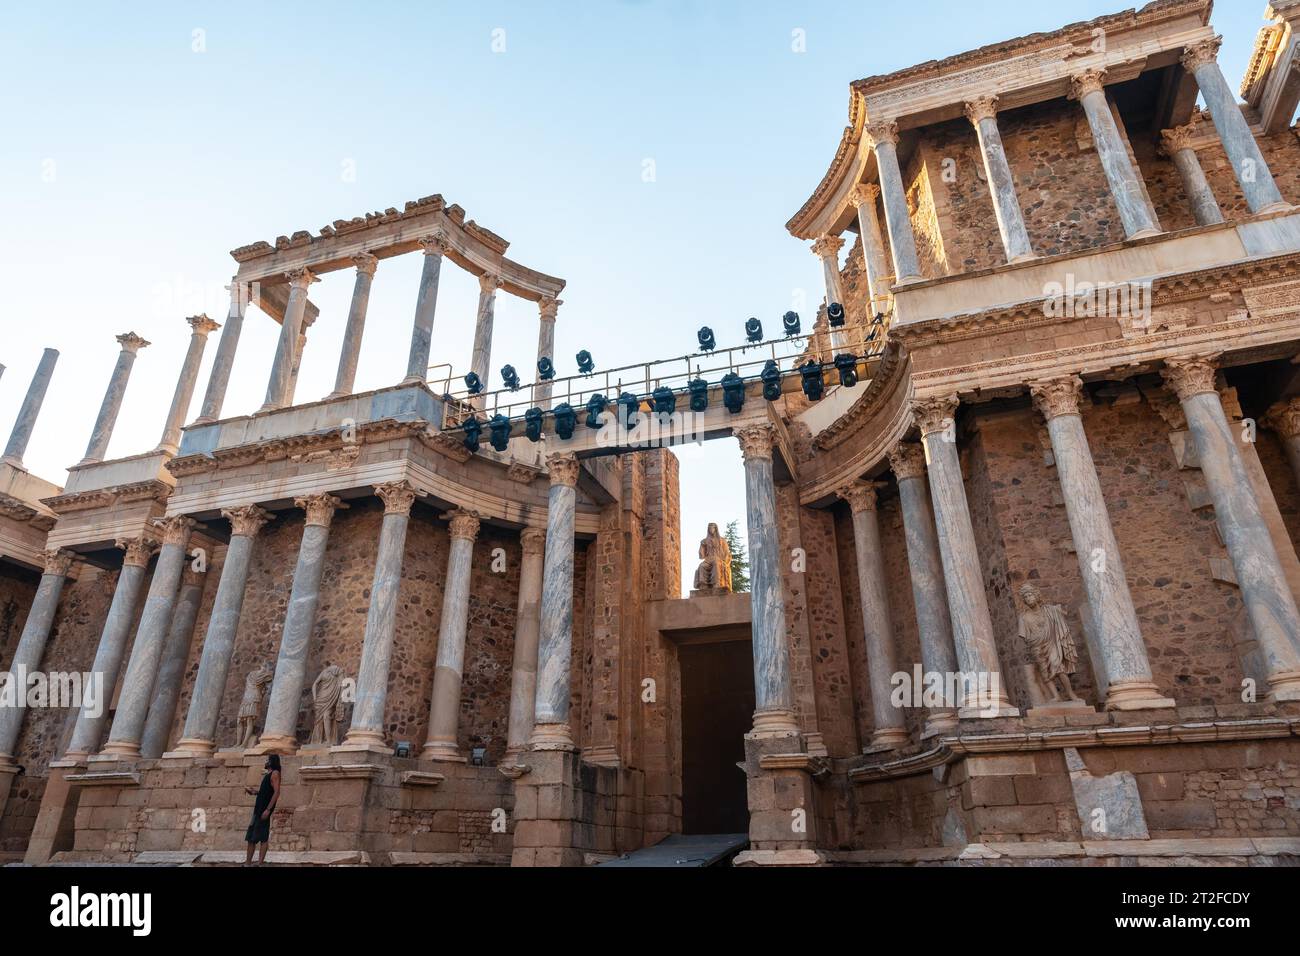 Römische Ruinen von Merida, Blick auf die Säulen des römischen Theaters. Extremadura, Spanien Stockfoto